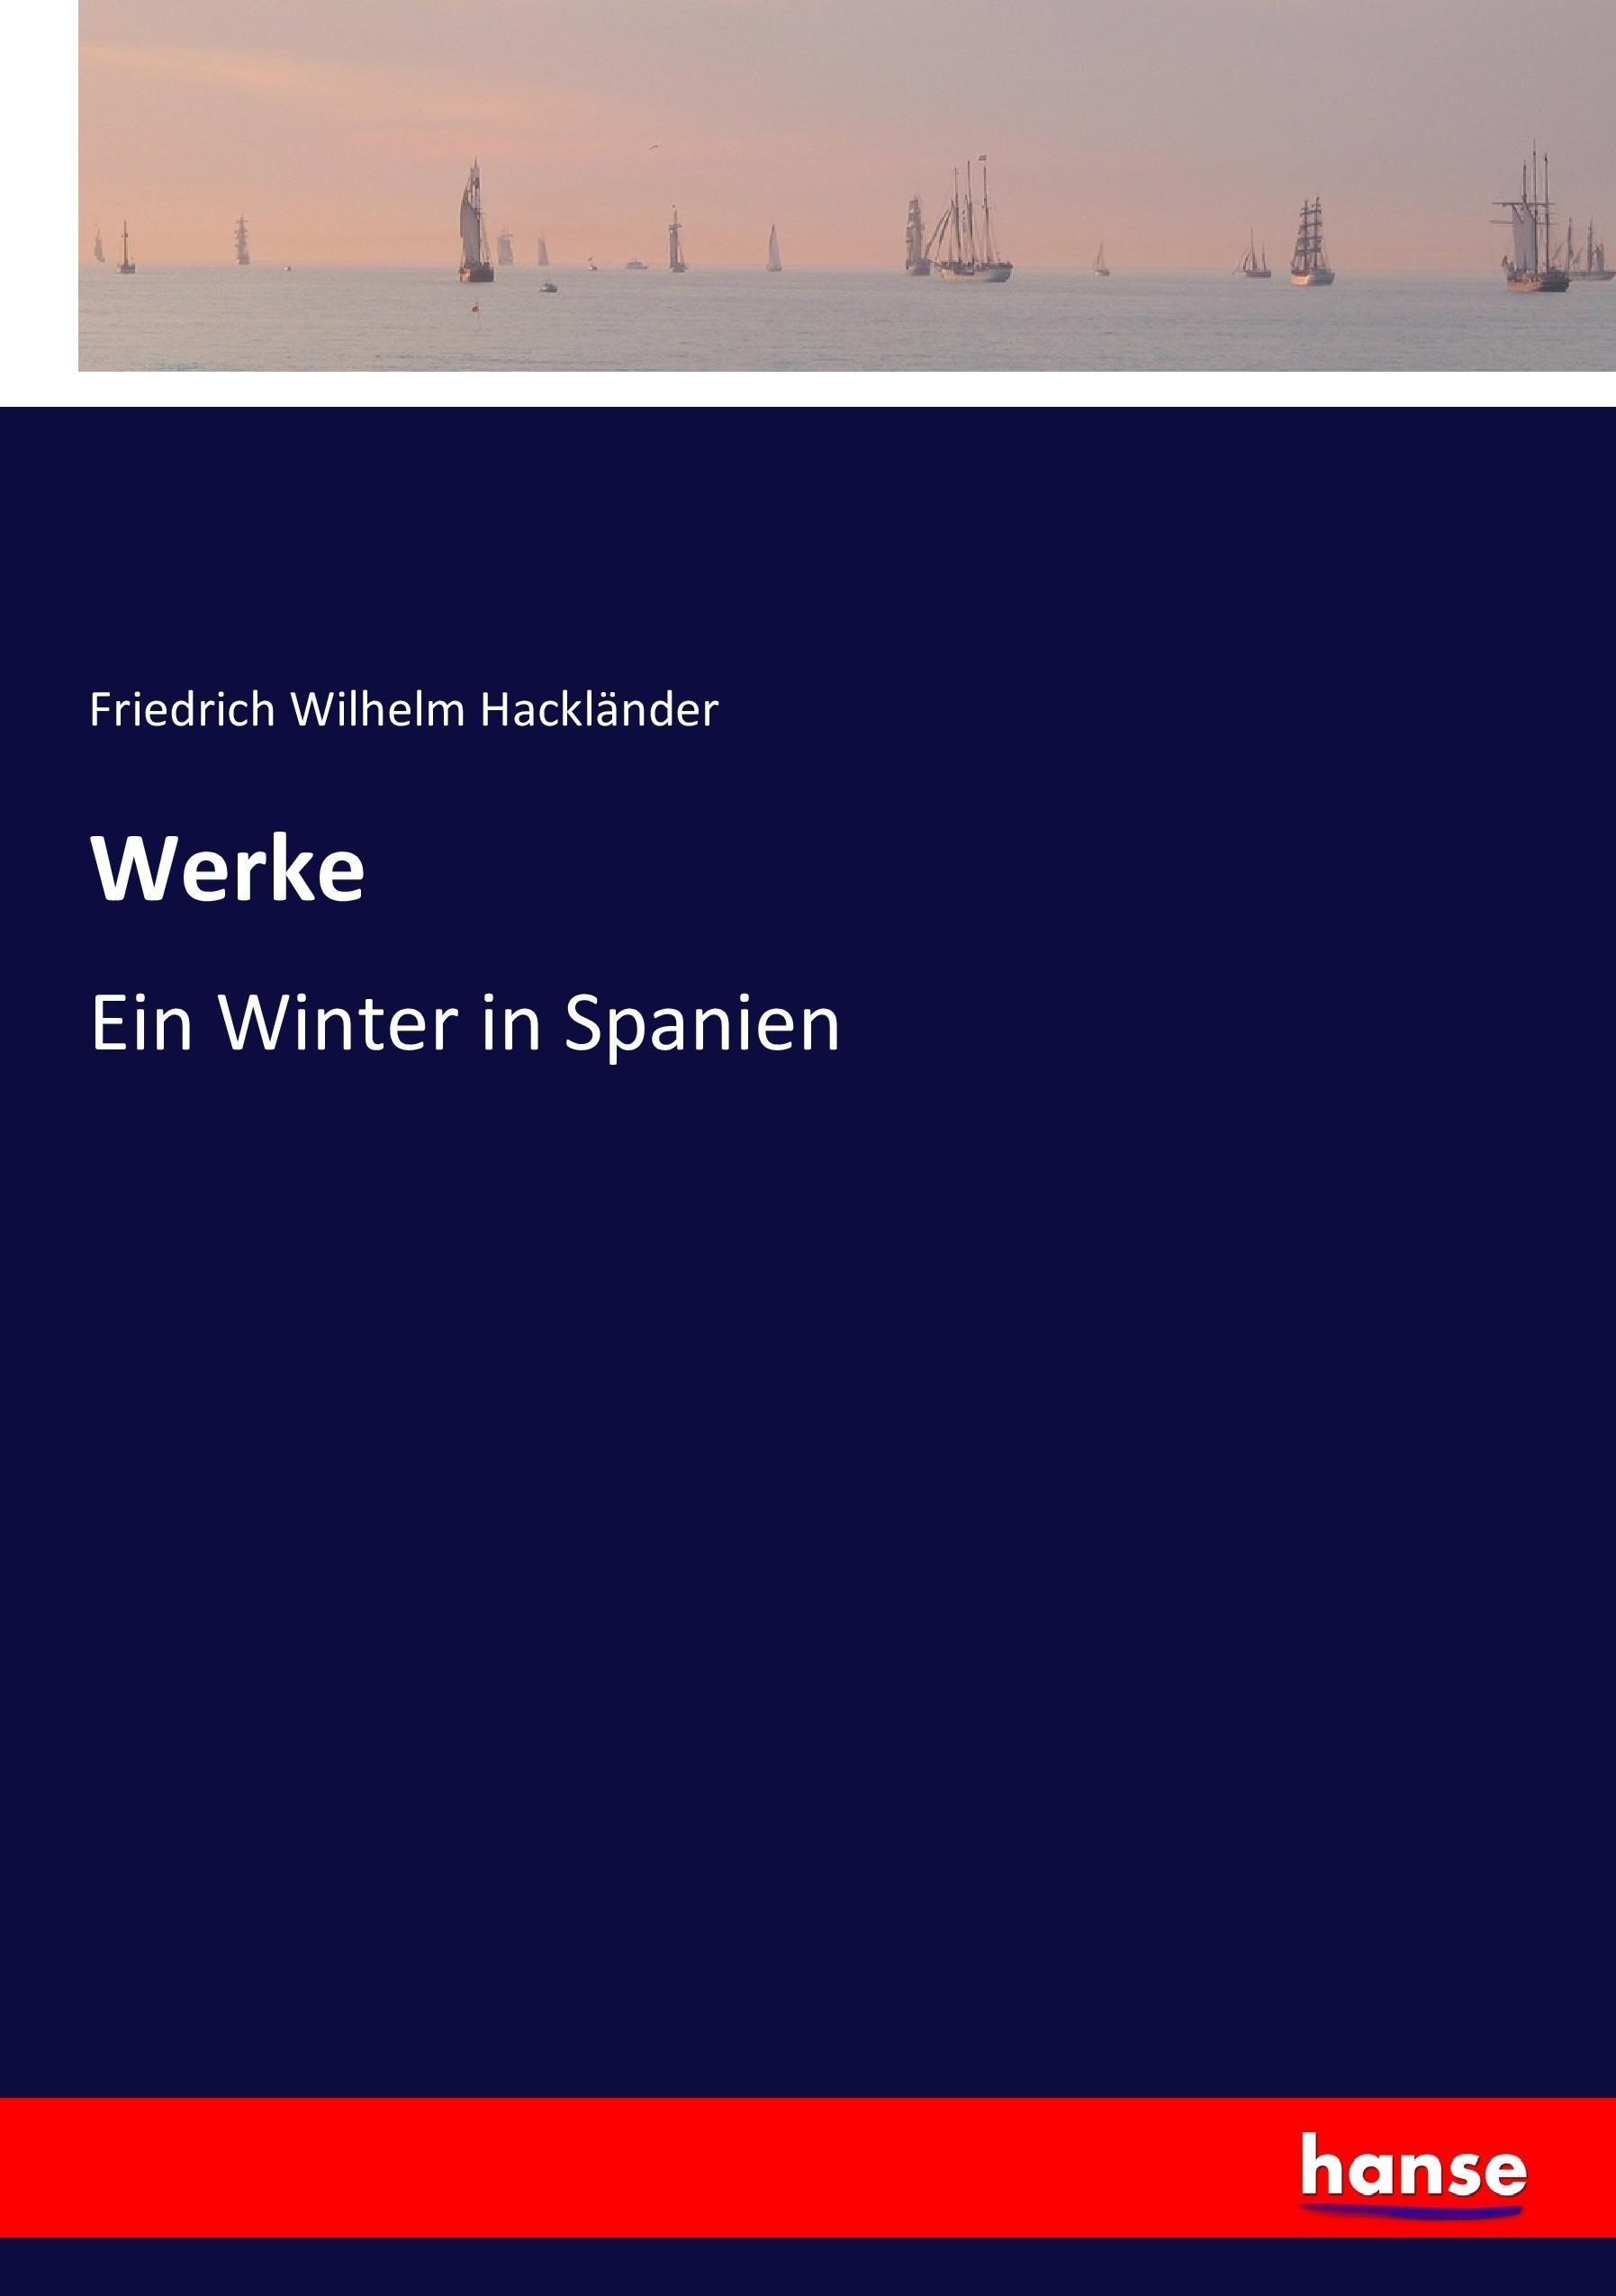 Werke | Ein Winter in Spanien | Friedrich Wilhelm Hackländer | Taschenbuch | Paperback | 272 S. | Deutsch | 2017 | hansebooks | EAN 9783744634441 - Hackländer, Friedrich Wilhelm